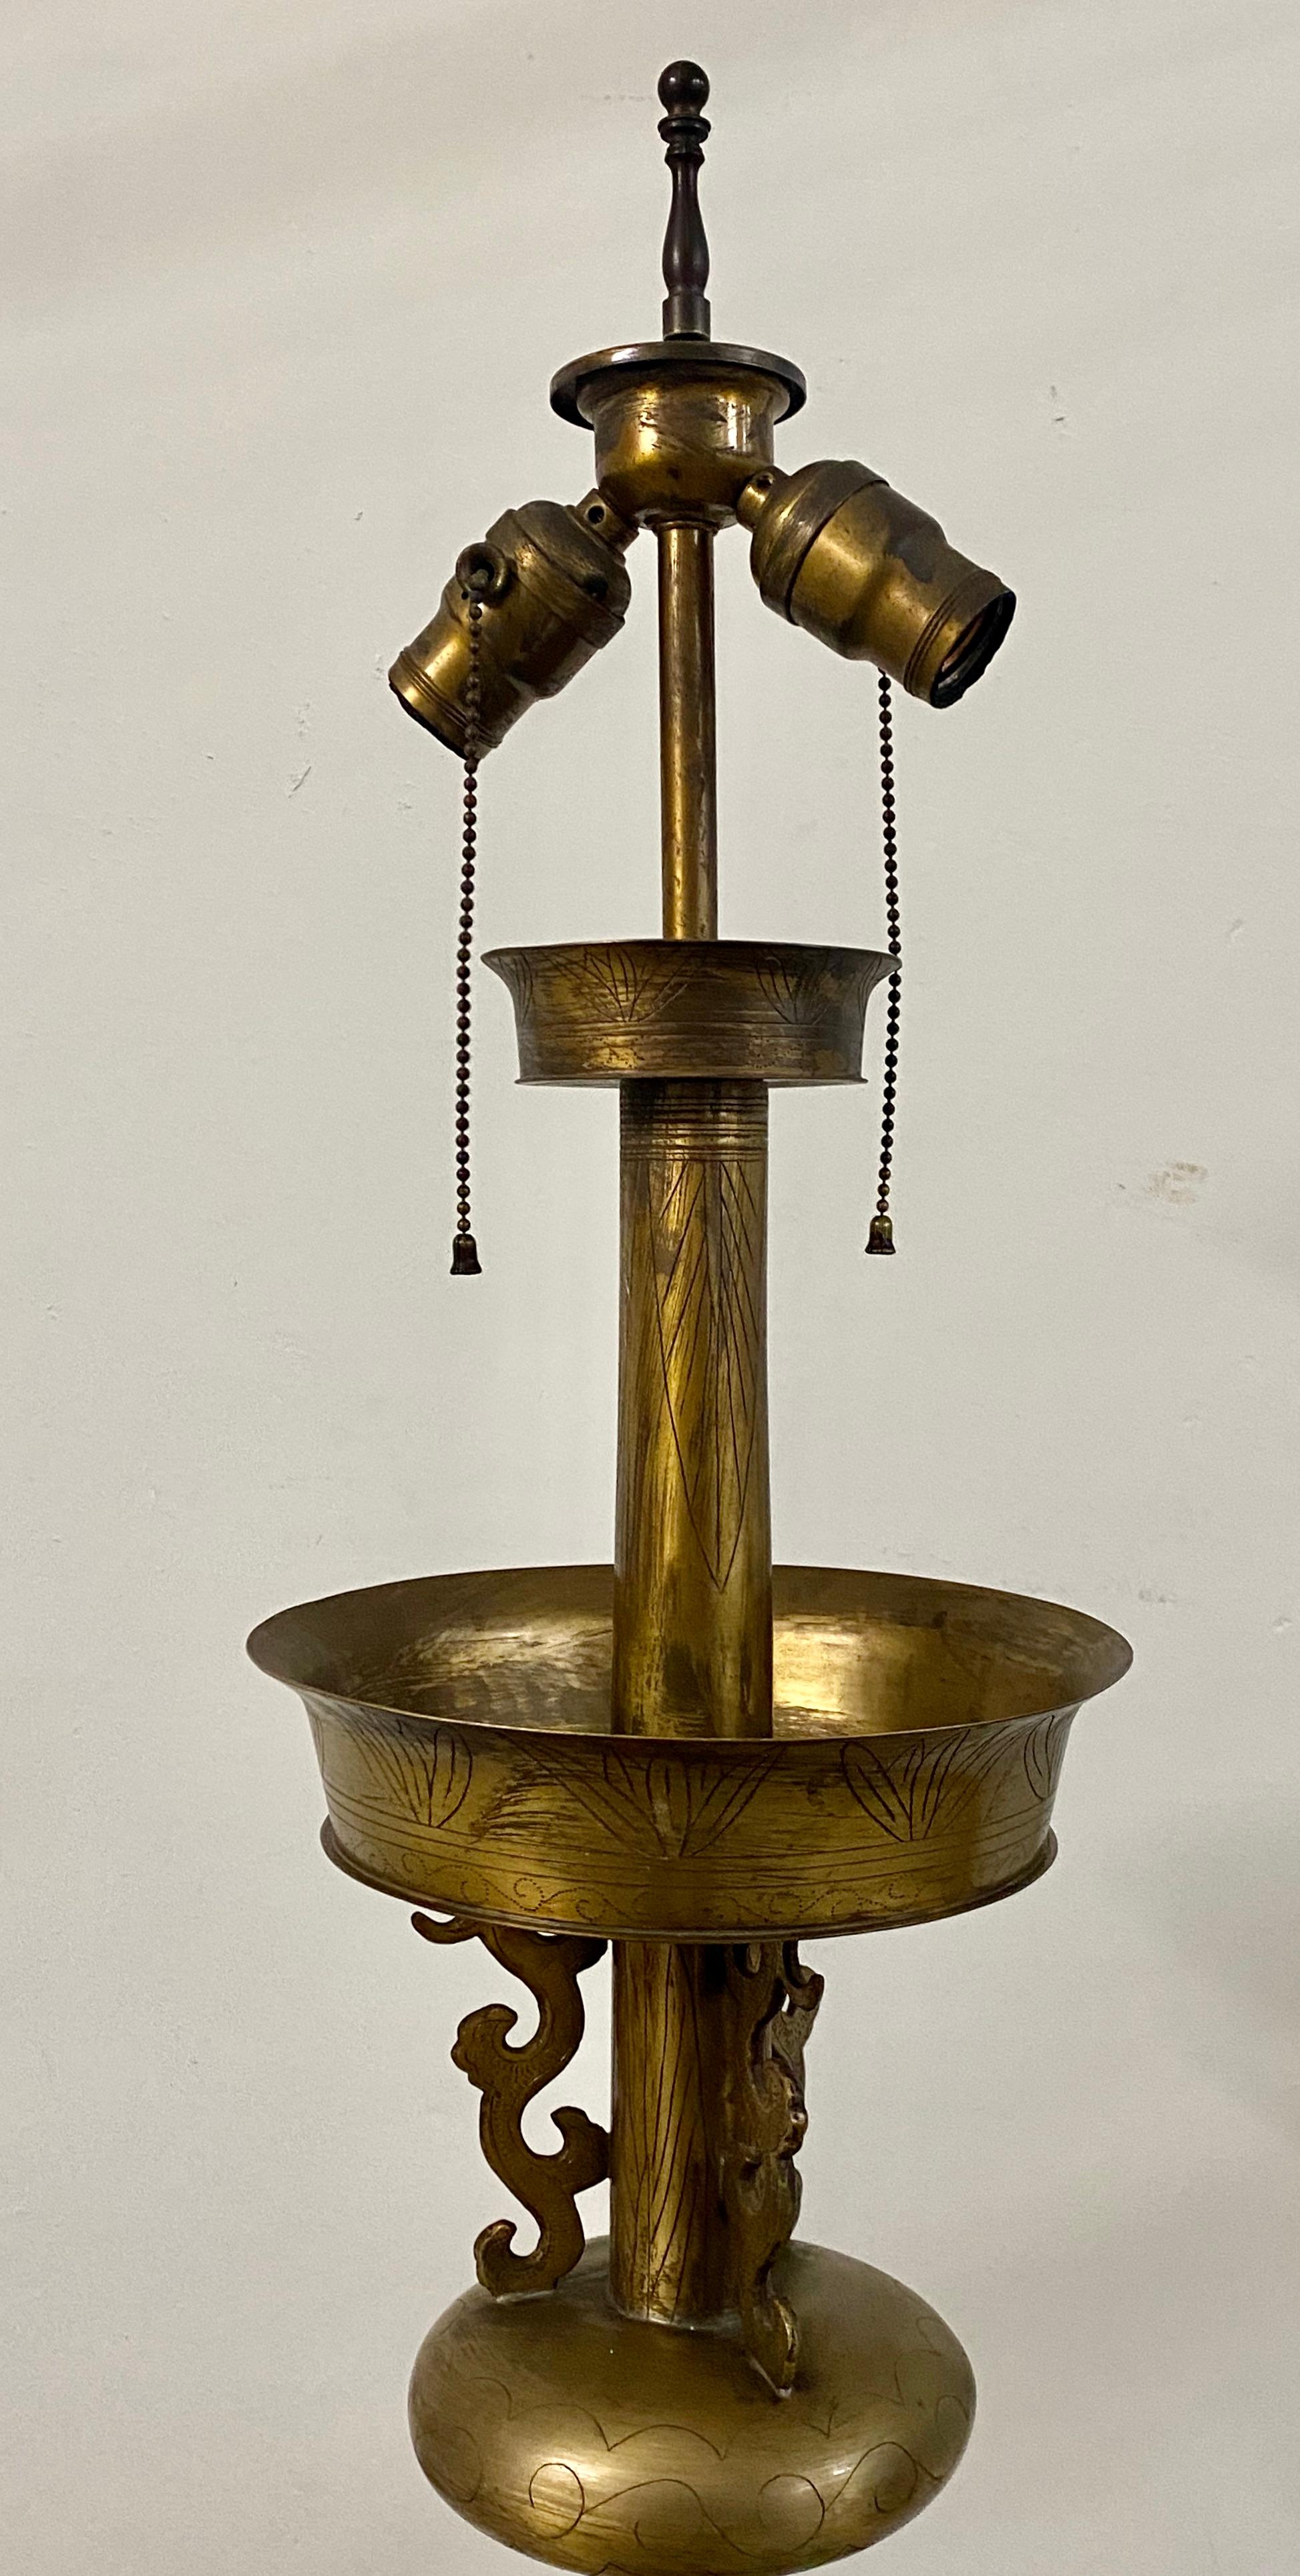 Asiatische Stehlampe mit geätztem Messingmotiv, um 1920

Fein geätzte Stehlampe aus Messing

Abmessungen: 17